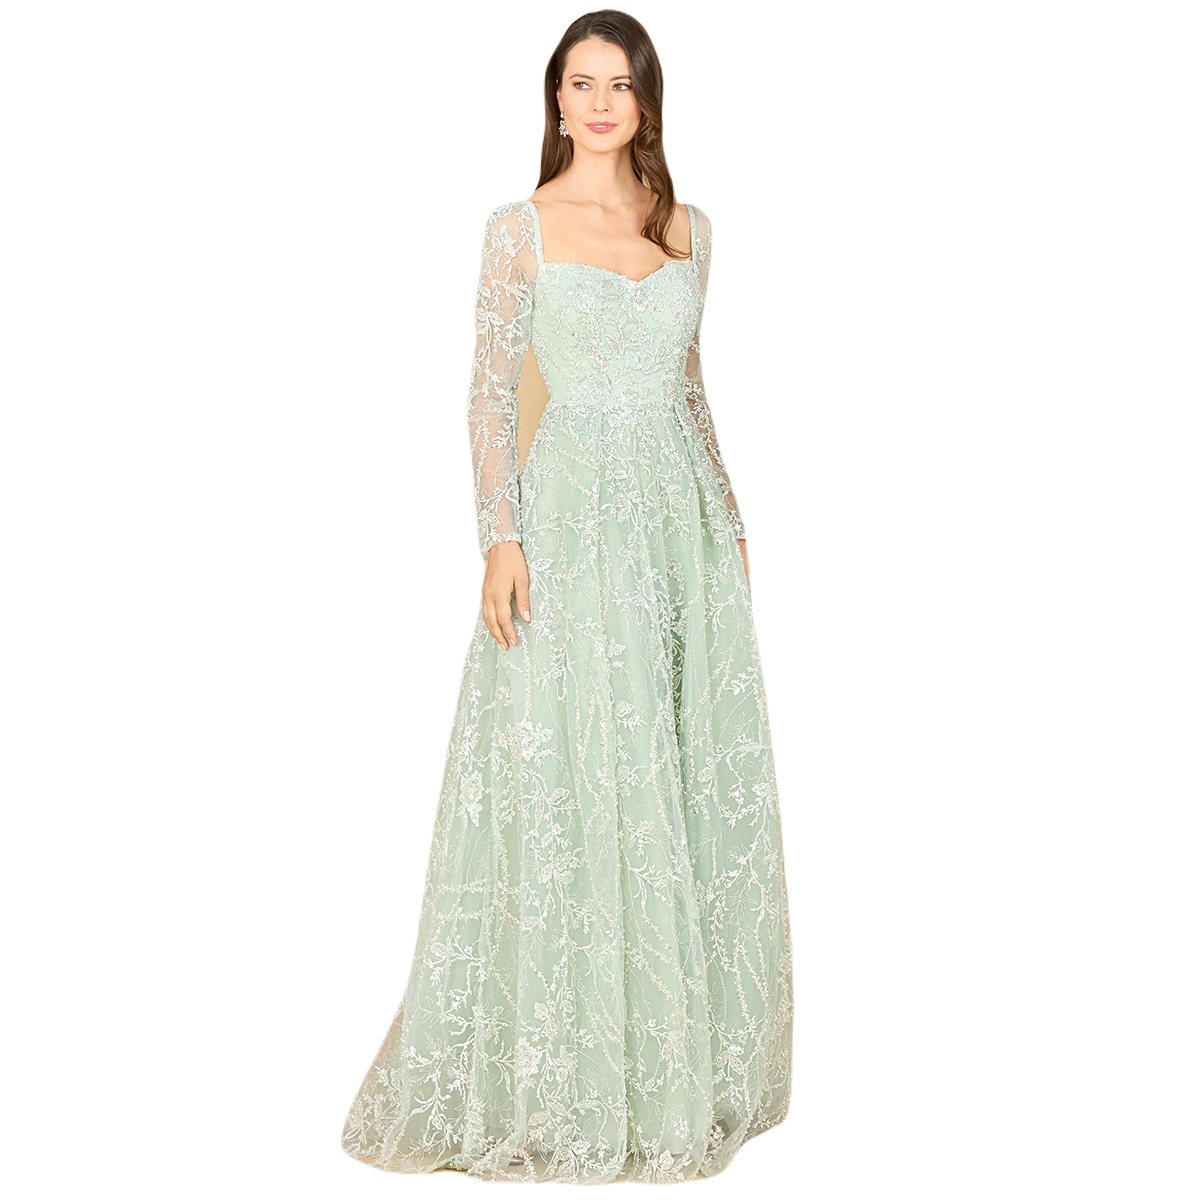 Vintage Evening Dresses, Vintage Formal Dresses Lara Womens Long Sleeve Beaded Lace Gown - Dusty sage $858.00 AT vintagedancer.com